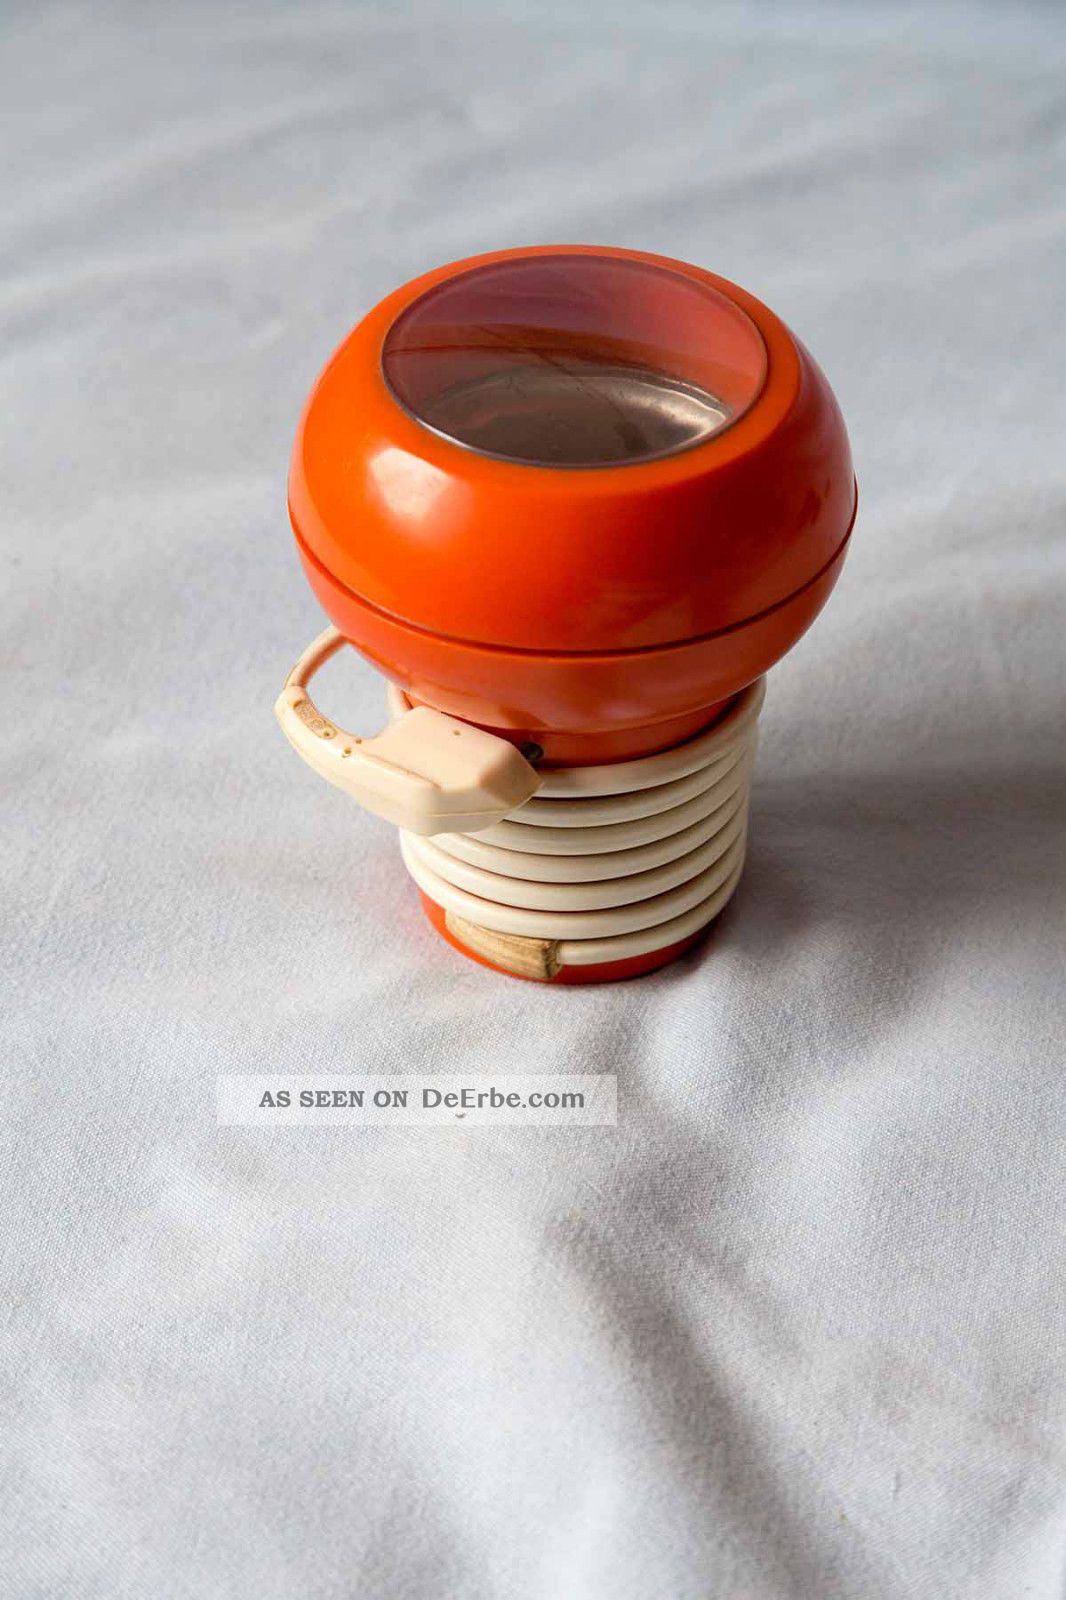 Ausgesprochen Futuristische Kaffemühle Aus Den Siebzigern 1970-1979 Bild